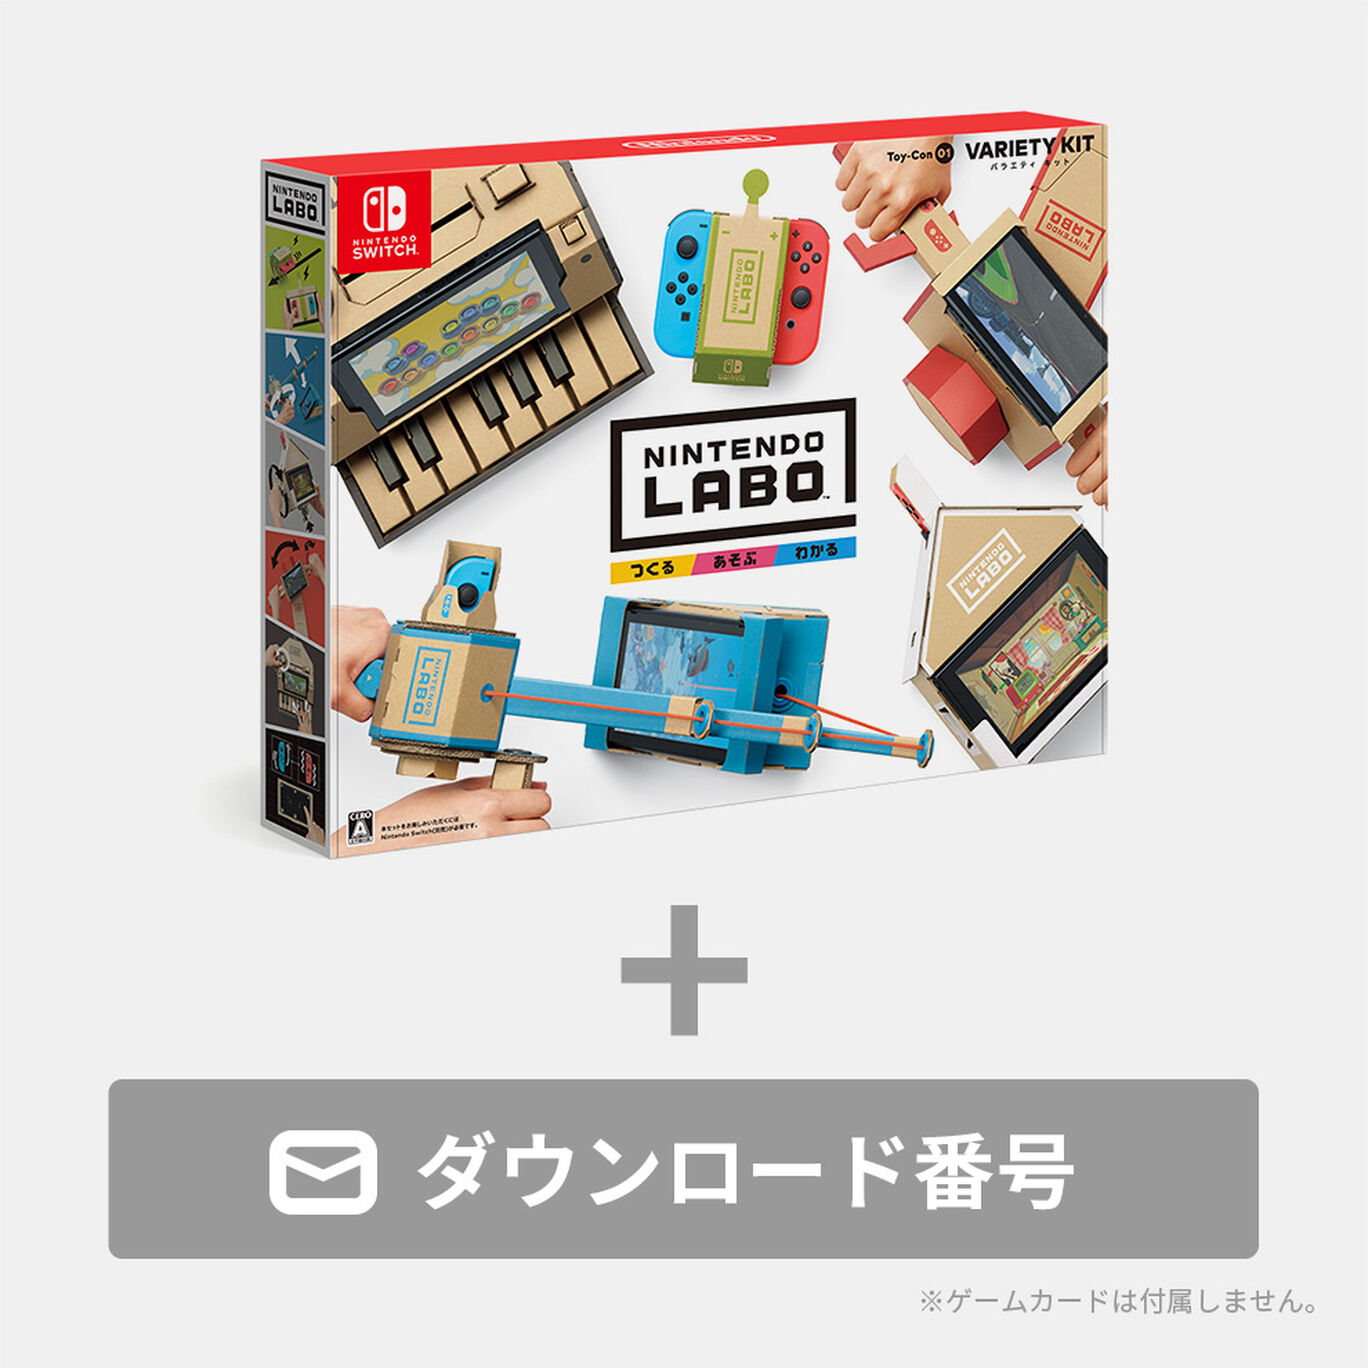 Nintendo Labo 01: Variety Kit キット）ダウンロード版 My Nintendo Store（マイニンテンドーストア）